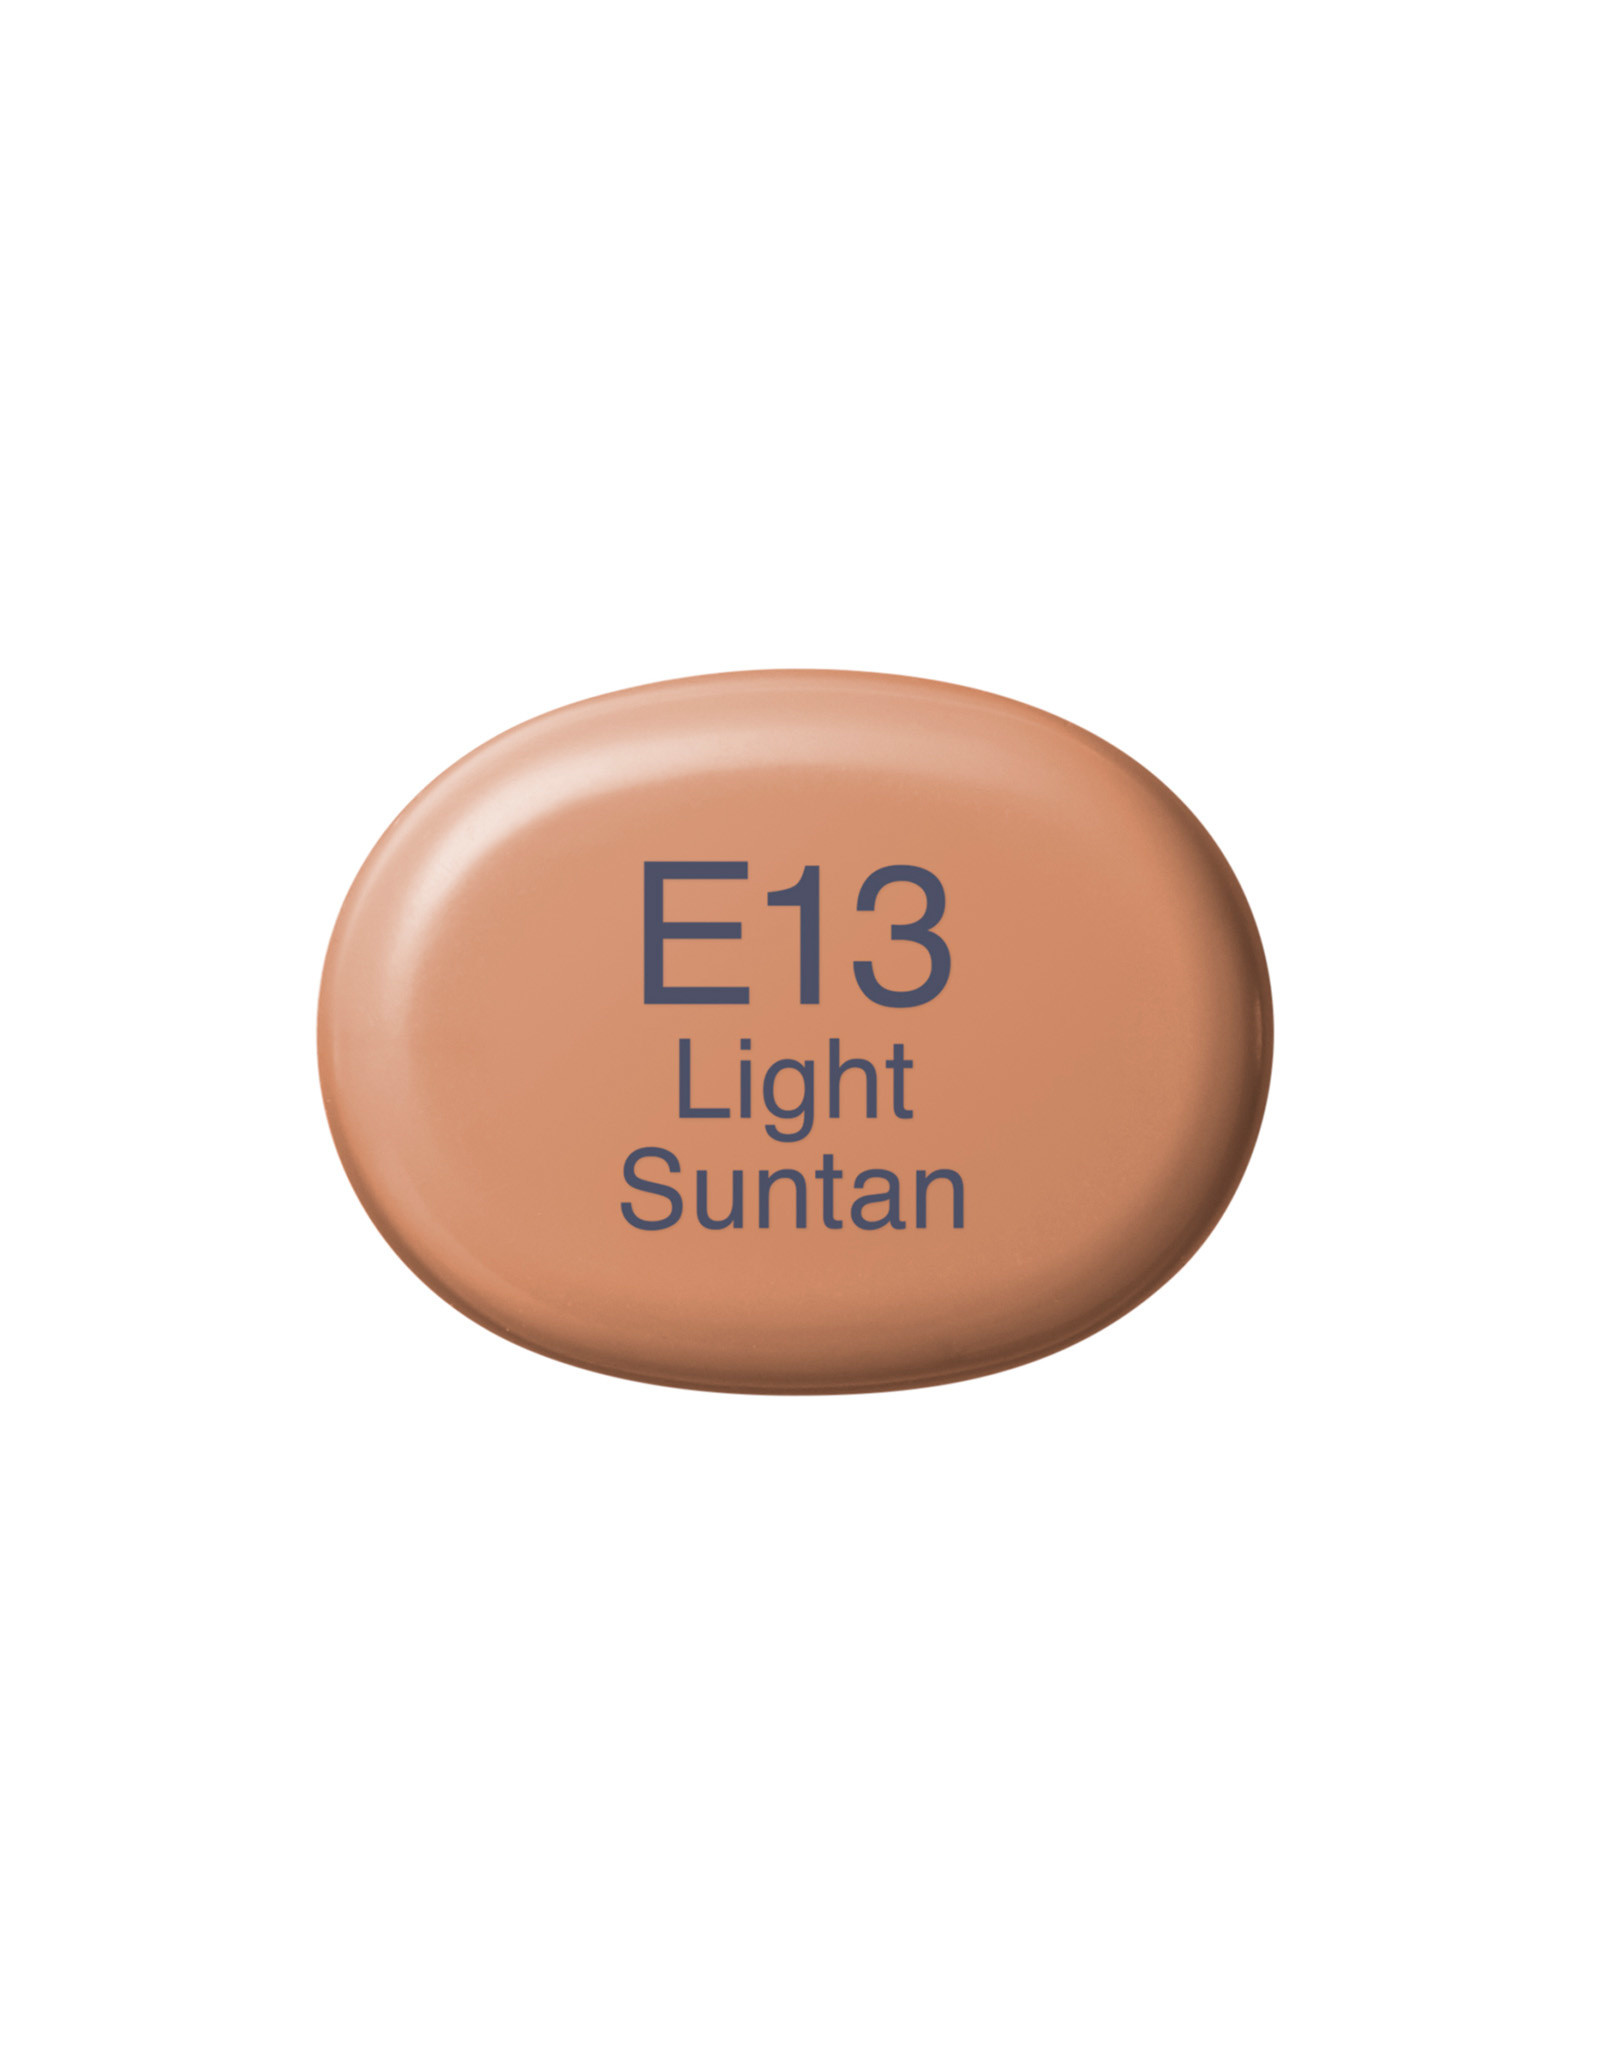 COPIC COPIC Sketch Marker E13 Light Suntan